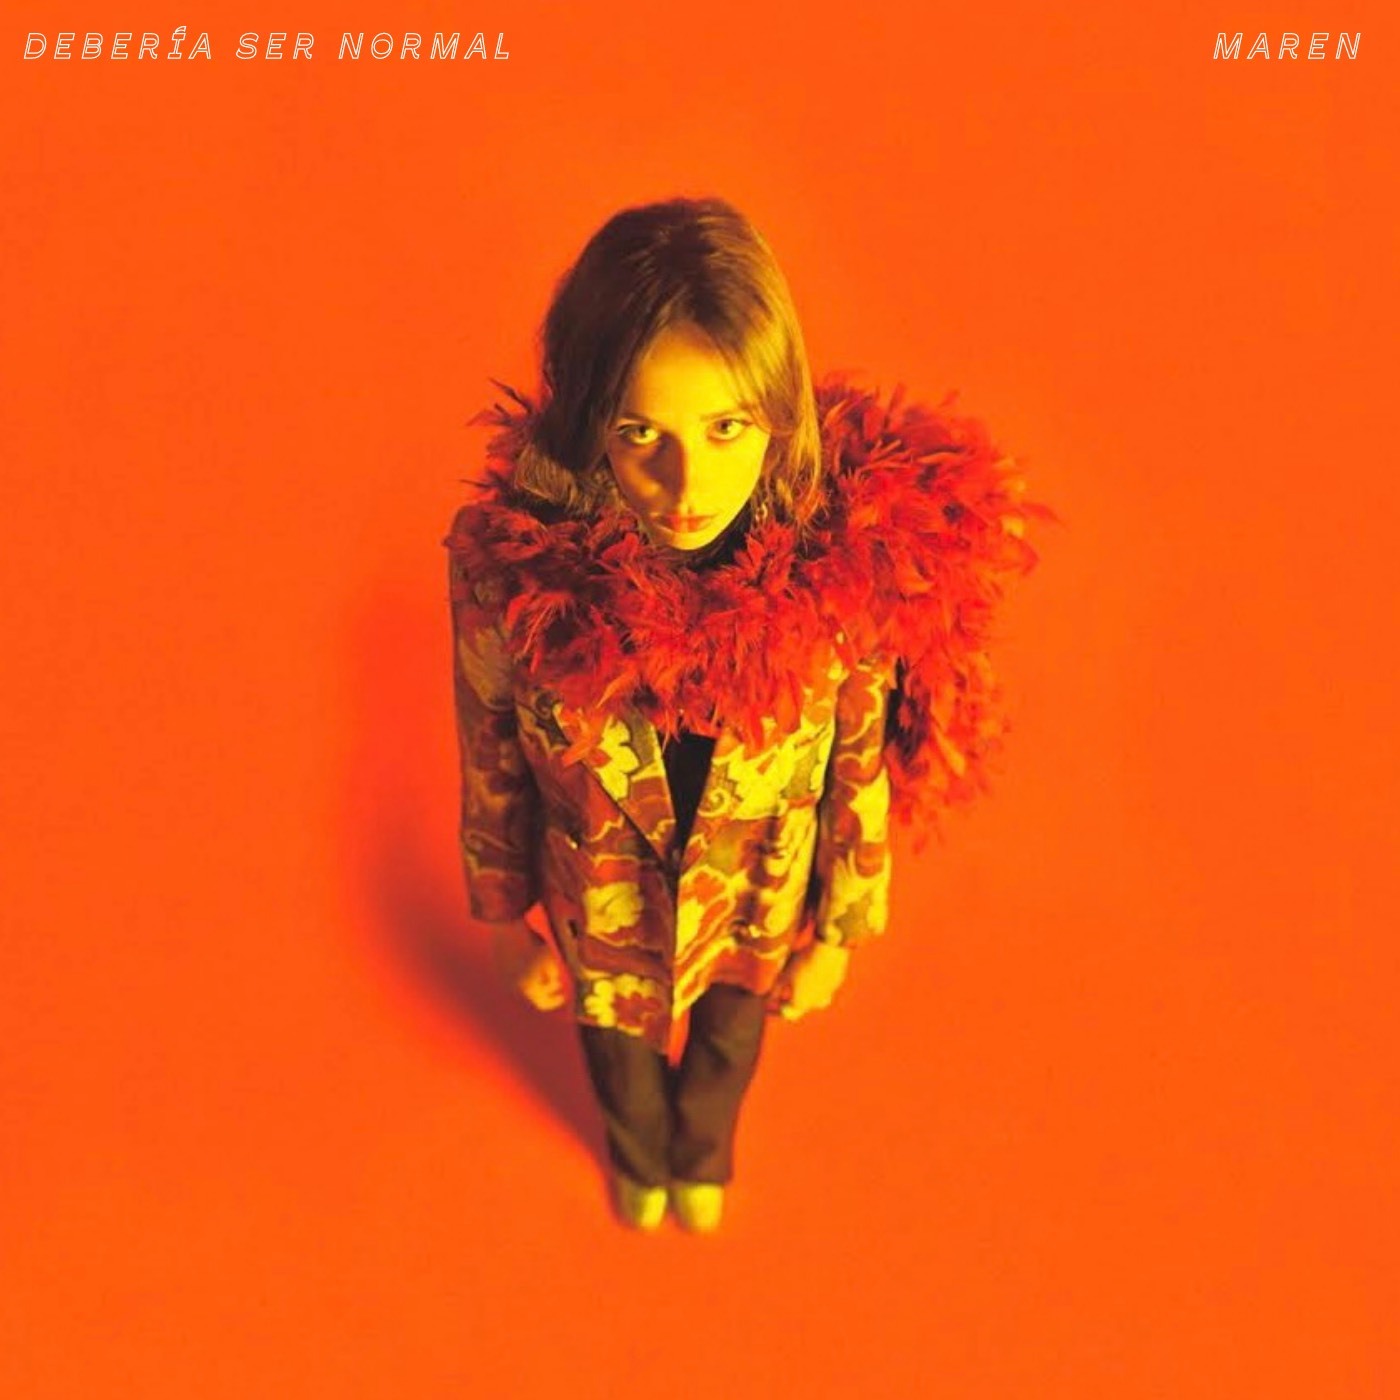 Maren lanza Debería ser normal, tercer adelanto de su próximo álbum 